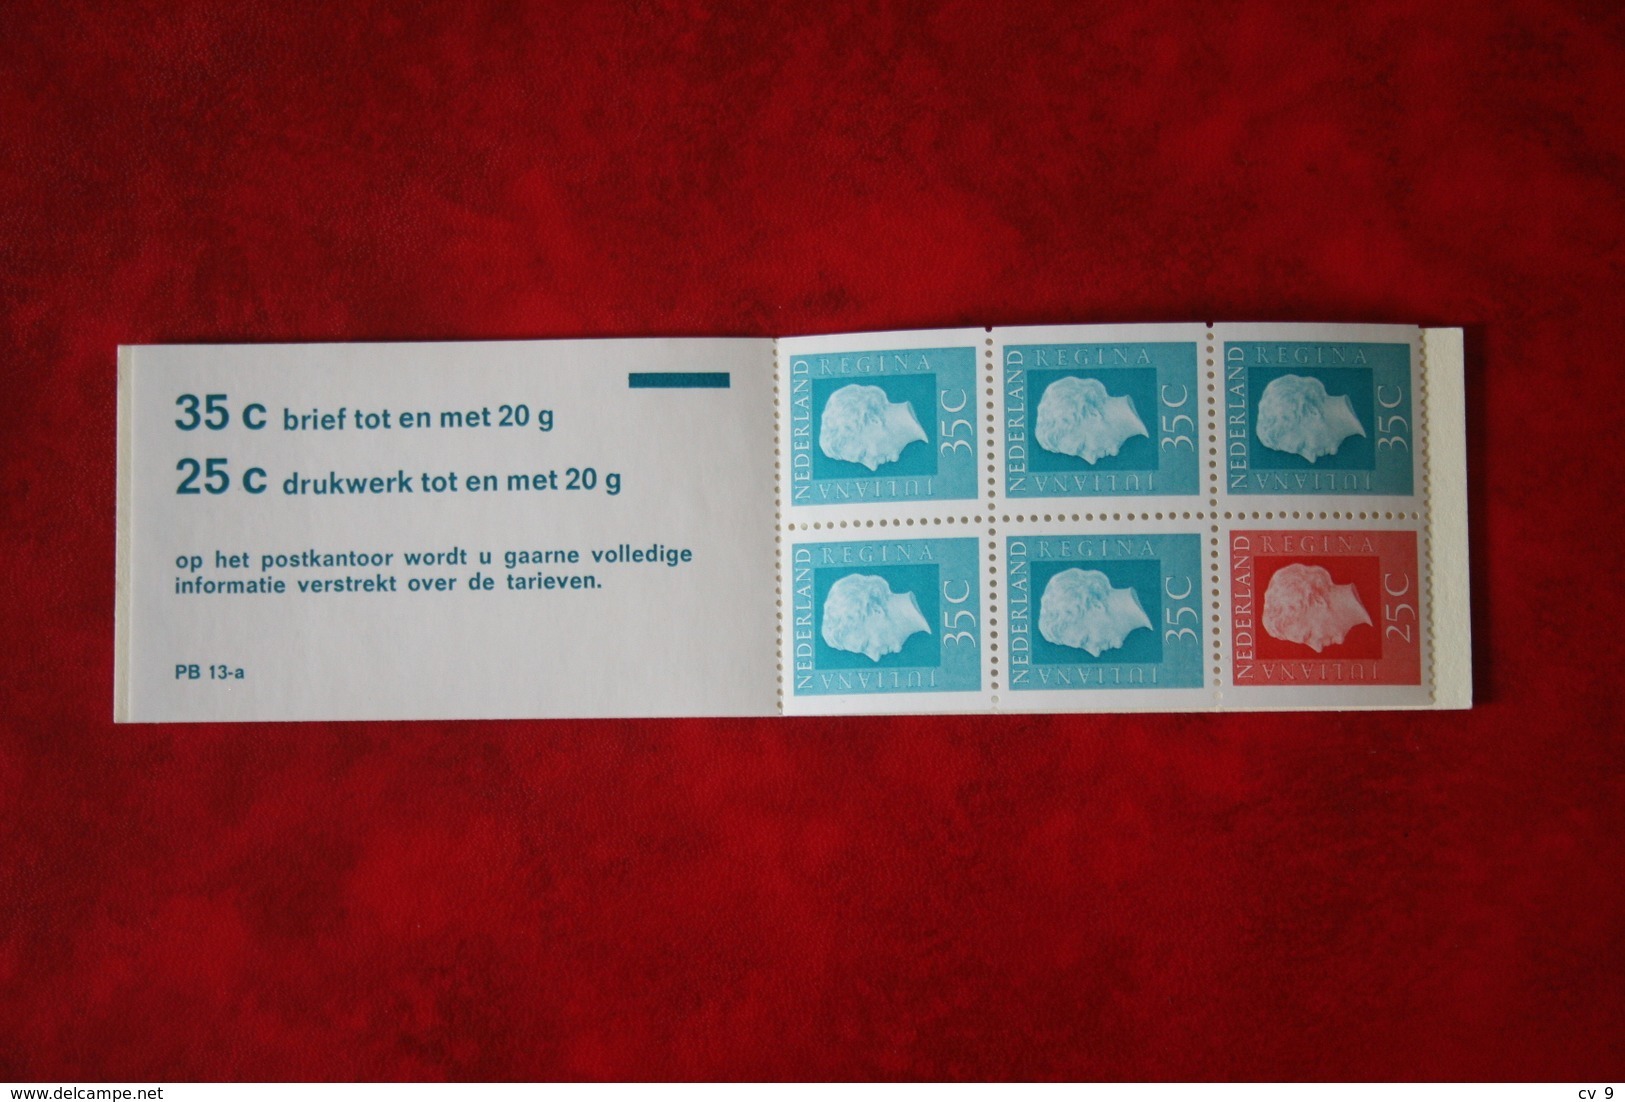 Postzegelboekje/heftchen Stamp Booklet - NVPH Nr. PB13a PB 13a (Mi MH 14) 1973 - POSTFRIS / MNH  NEDERLAND / NETHERLANDS - Markenheftchen Und Rollen